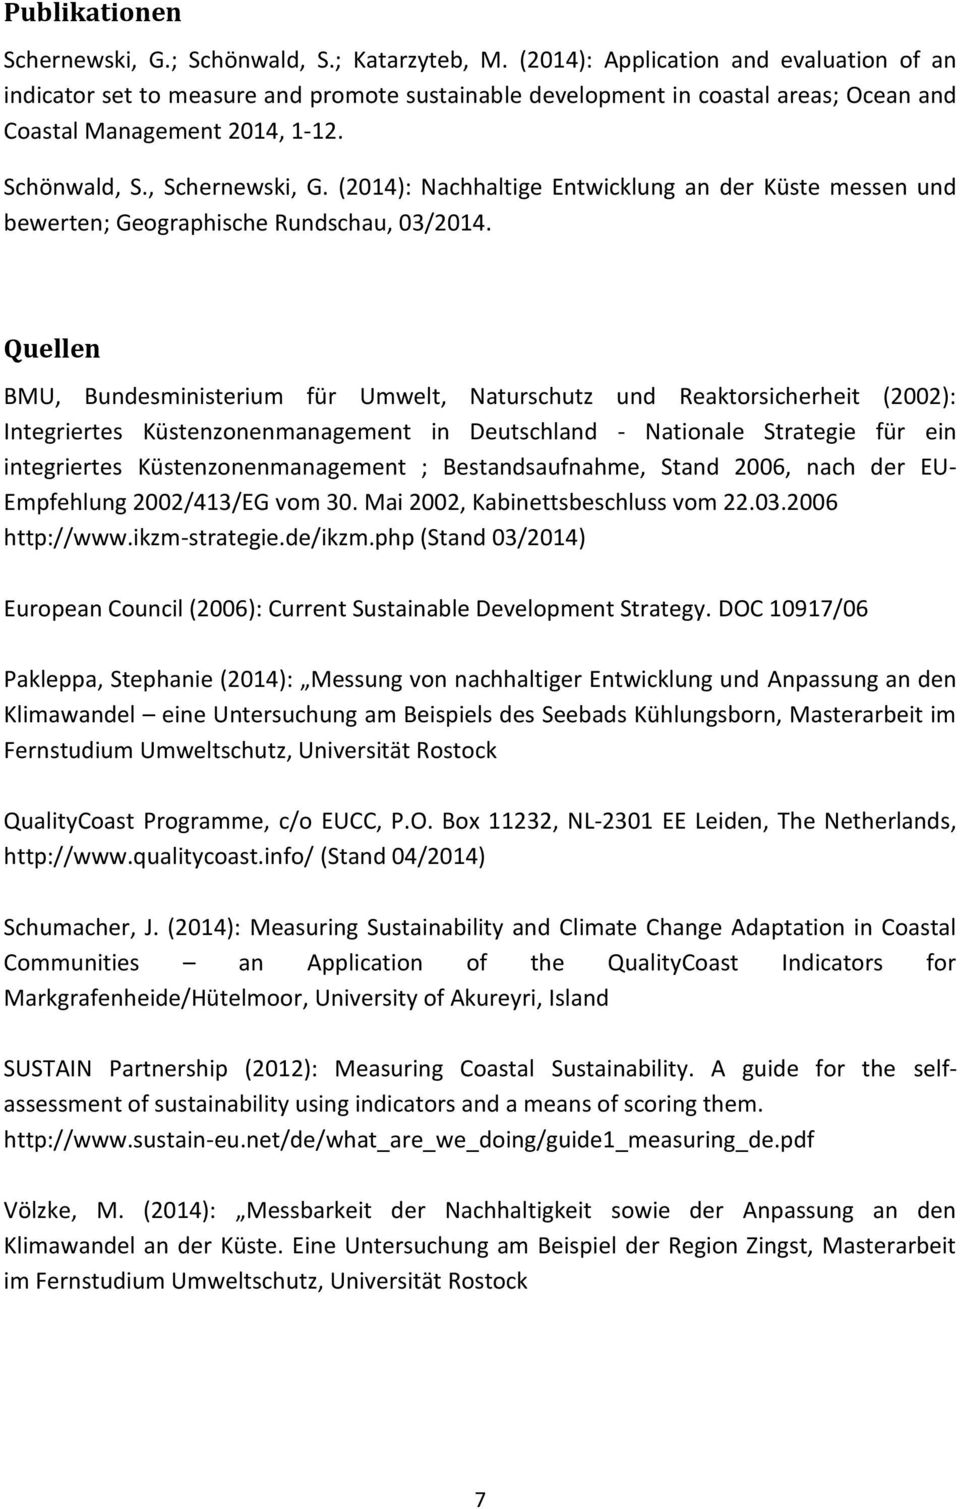 (2014): Nachhaltige Entwicklung an der Küste messen und bewerten; Geographische Rundschau, 03/2014.